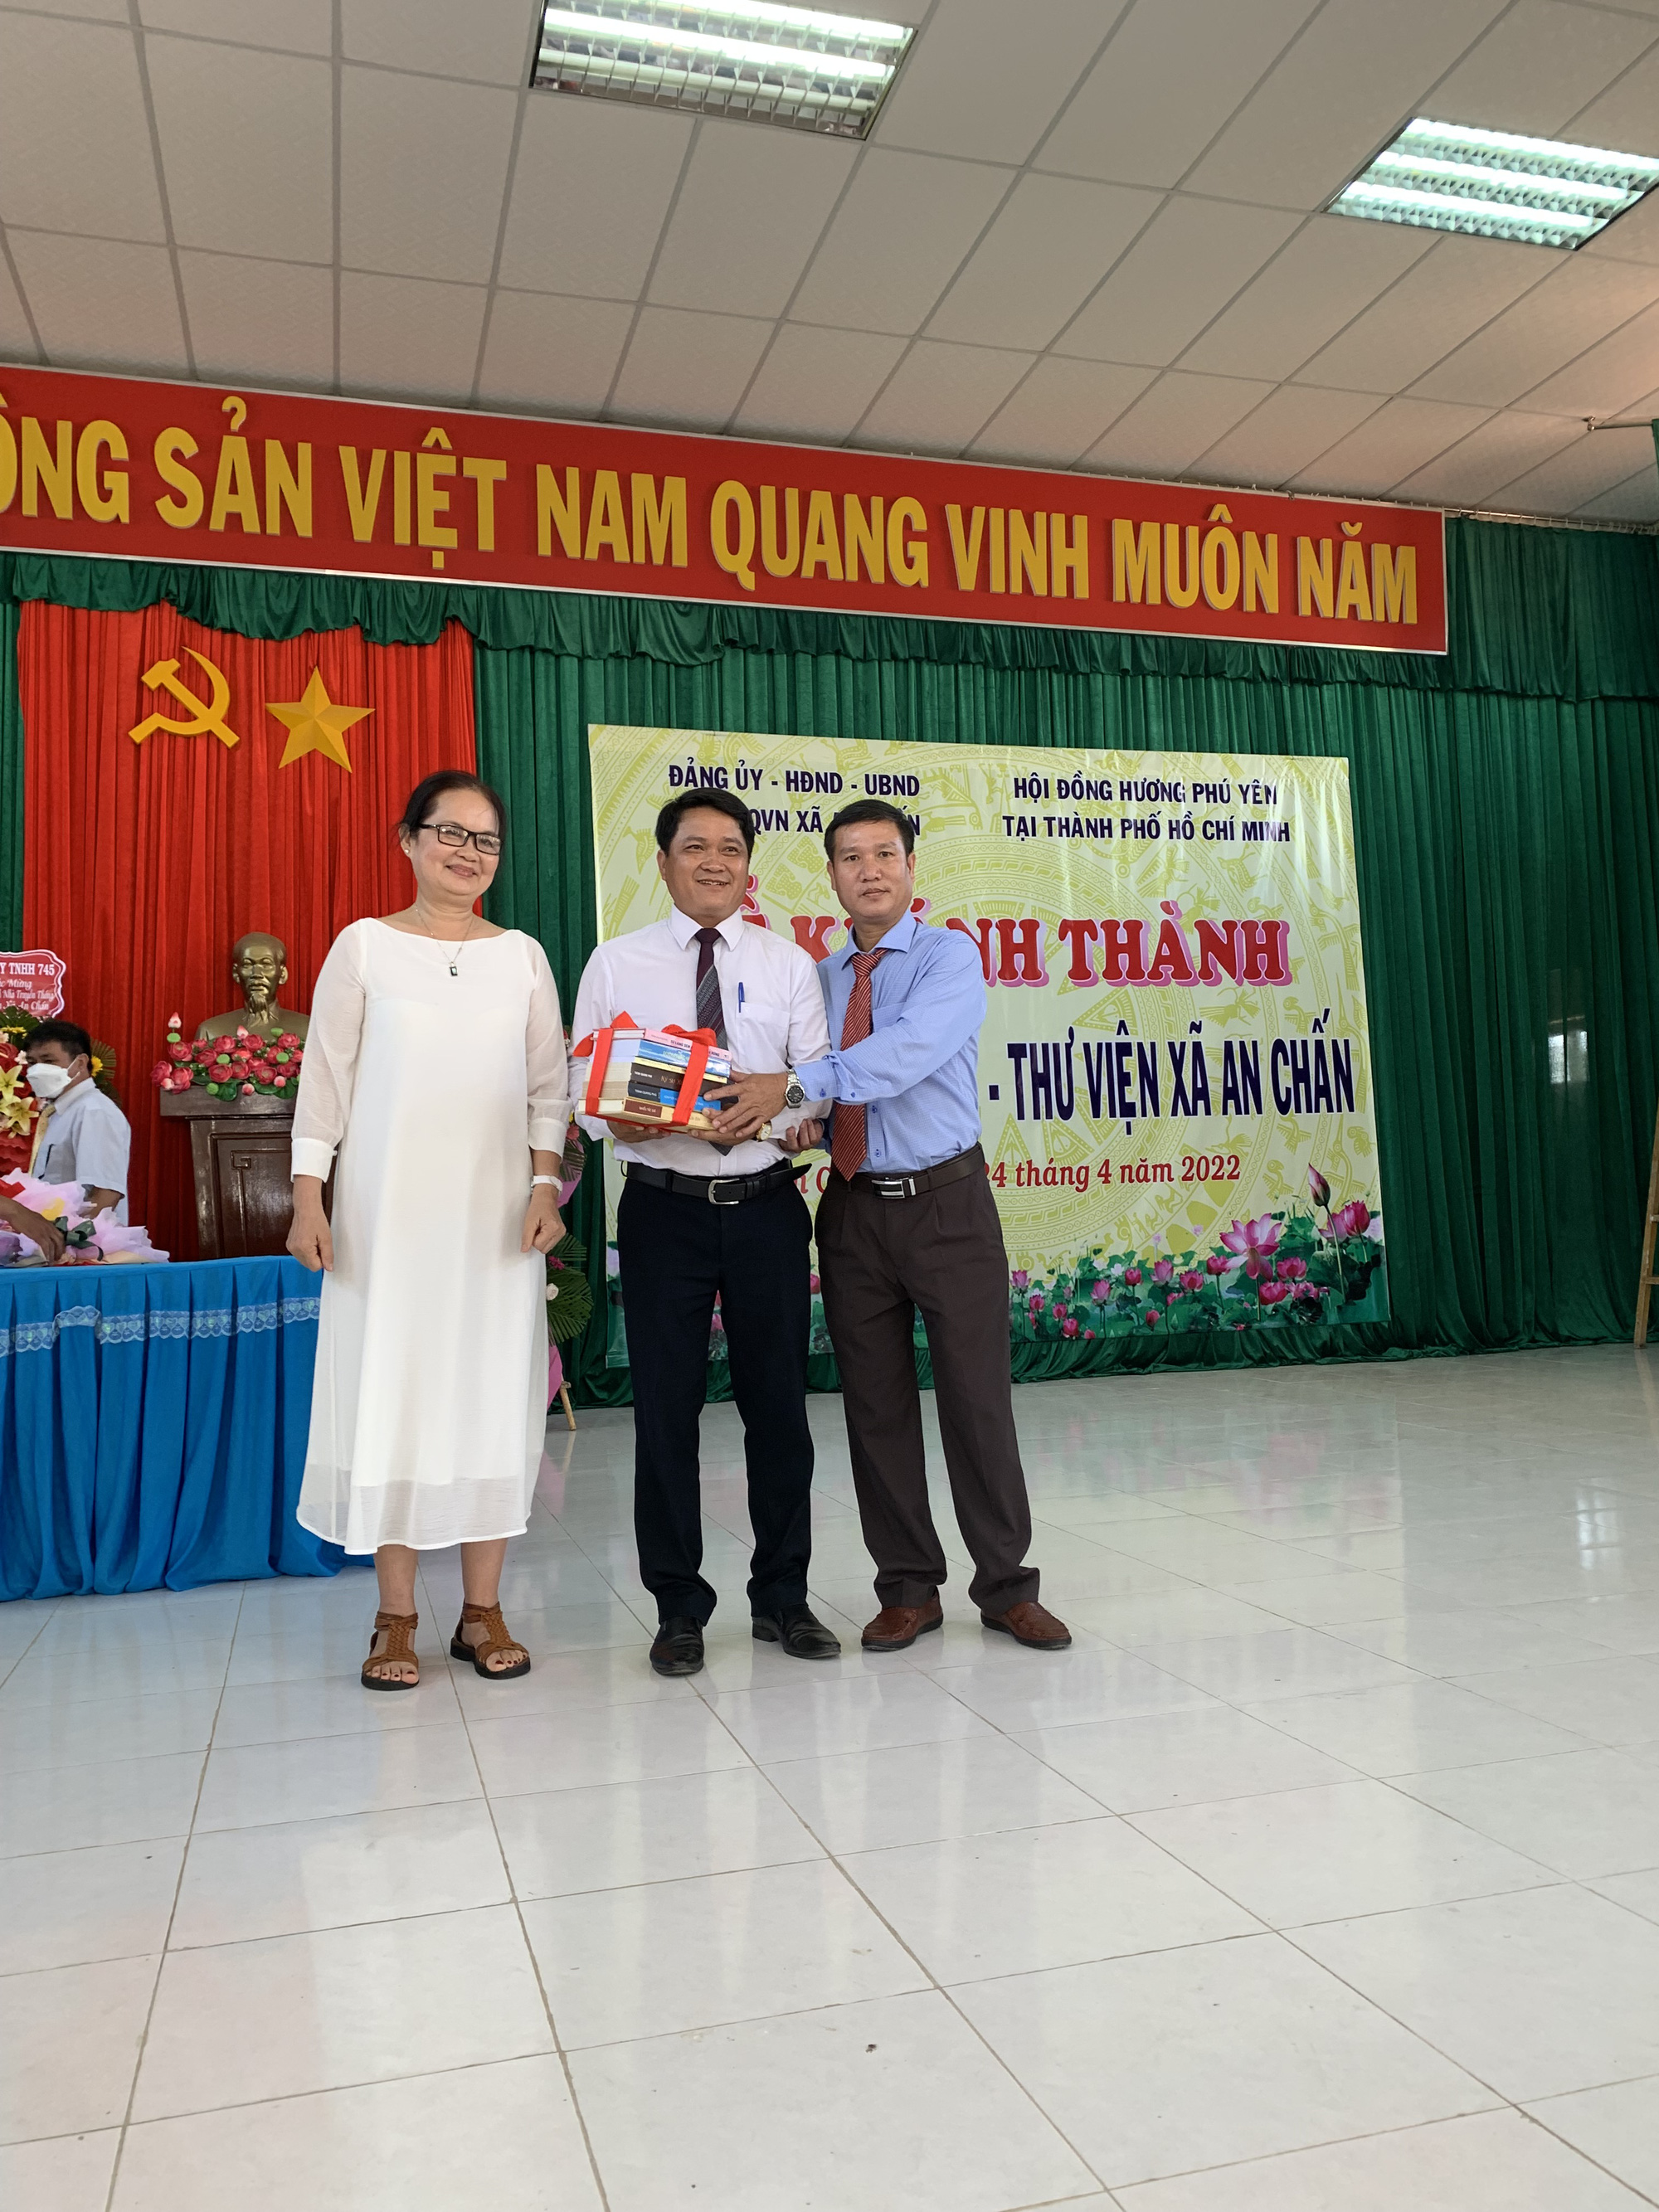 Hội Nhà văn TP HCM tổ chức trại sáng tác tại Phú Yên - Ảnh 3.